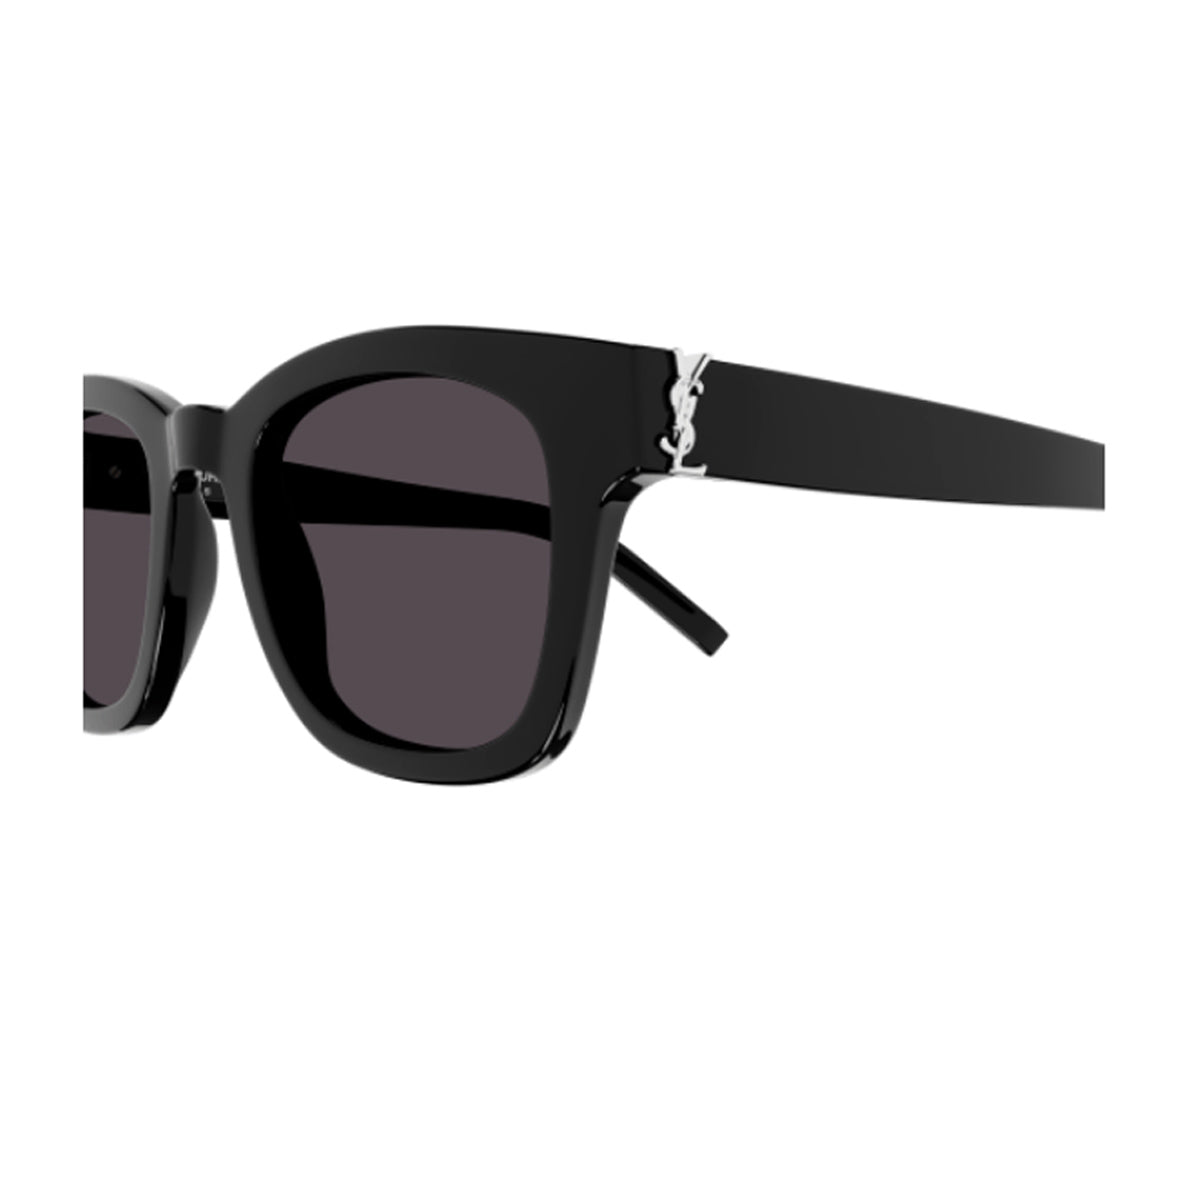 SL M124 001-Occhiali da sole-Saint Laurent-Gli occhiali da sole di Saint Laurent rappresentano un must-have per gli amanti della moda e per chi cerca un accessorio che coniughi stile ed efficienza. Essi incarnano l'essenza dell'eleganza e dello stile sofisticato della Maison. In particolare, il nuovo modello SL M124 presenta una montatura femminile dalla forma squadrata dalle linee leggere. Questi occhiali si contraddistinguono per l'iconico logo YSL Monogram sulla cerniera, un dettaglio prezioso che confer